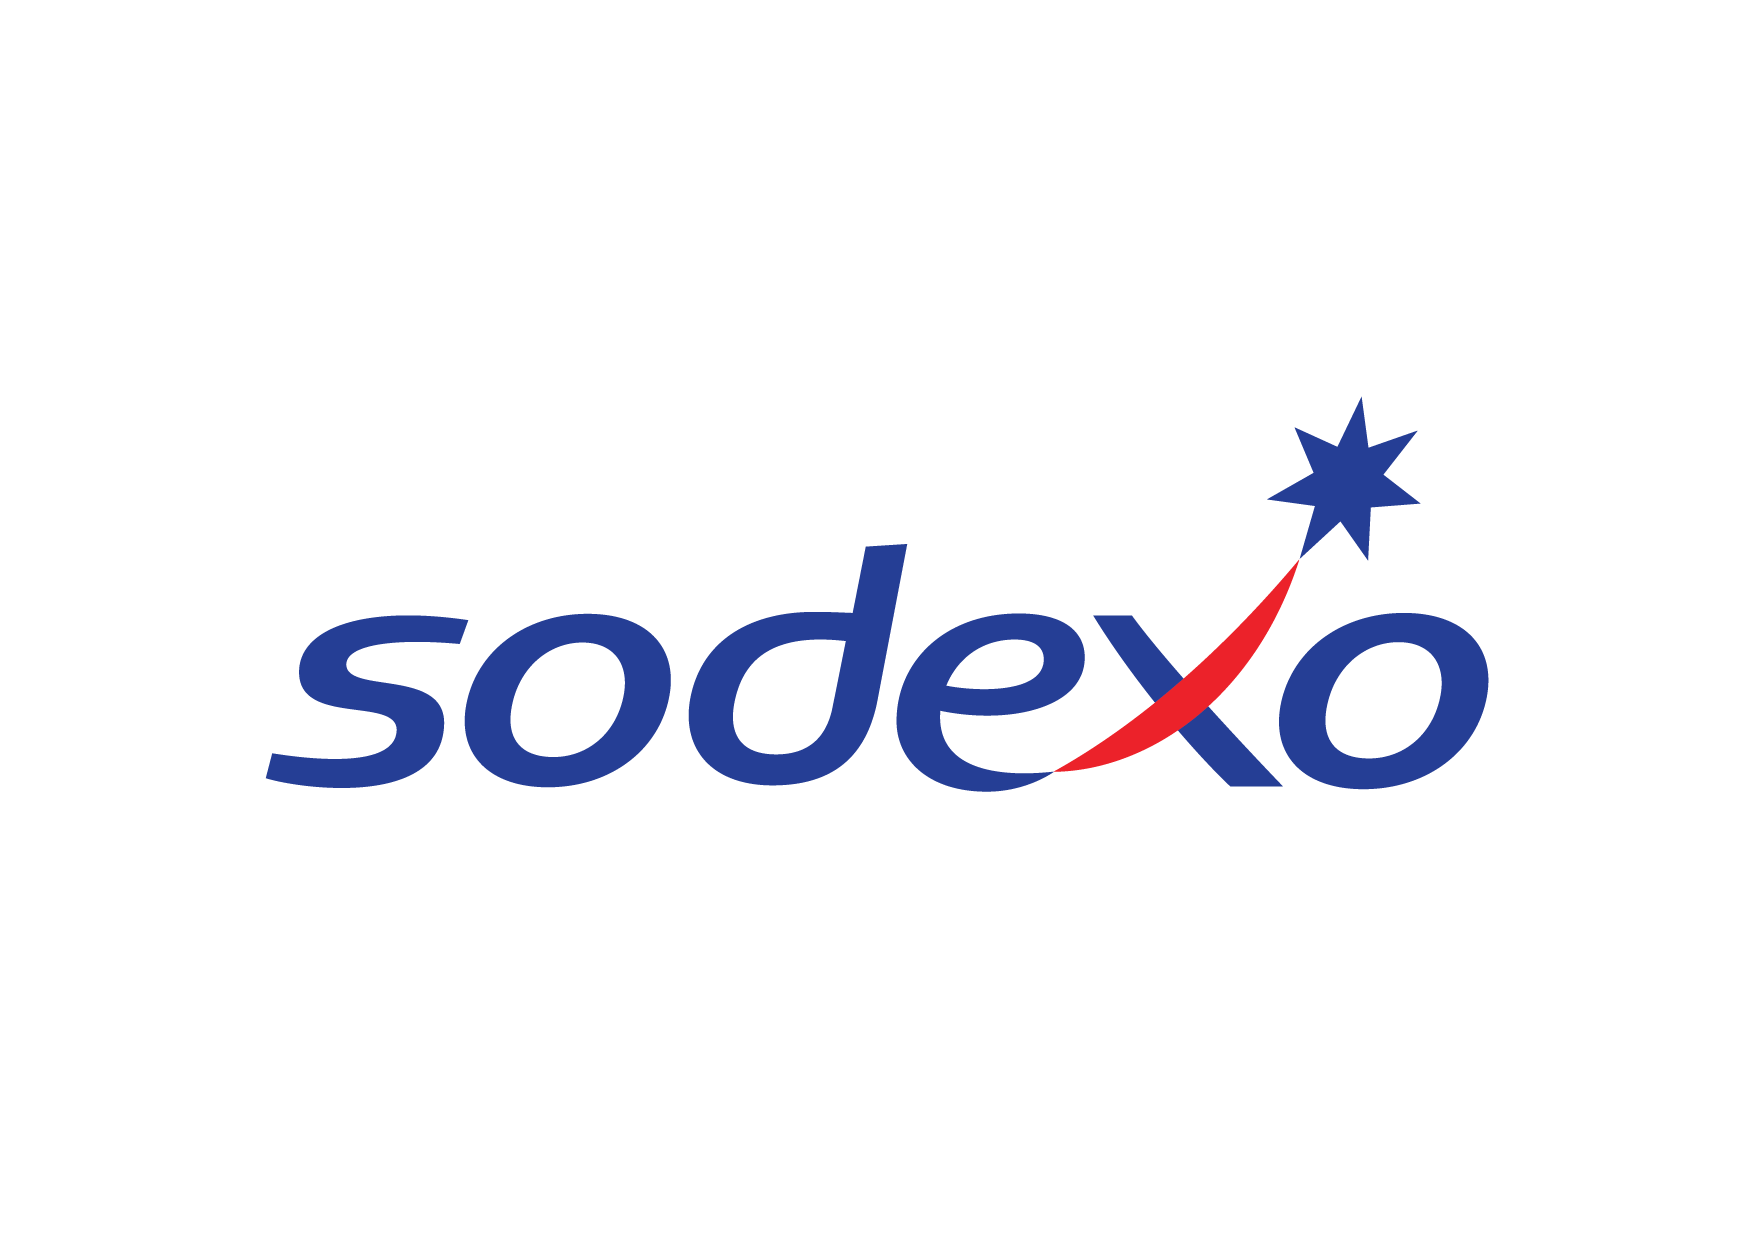 Sodexo’lular her harcamada Misket puan kazanıyor